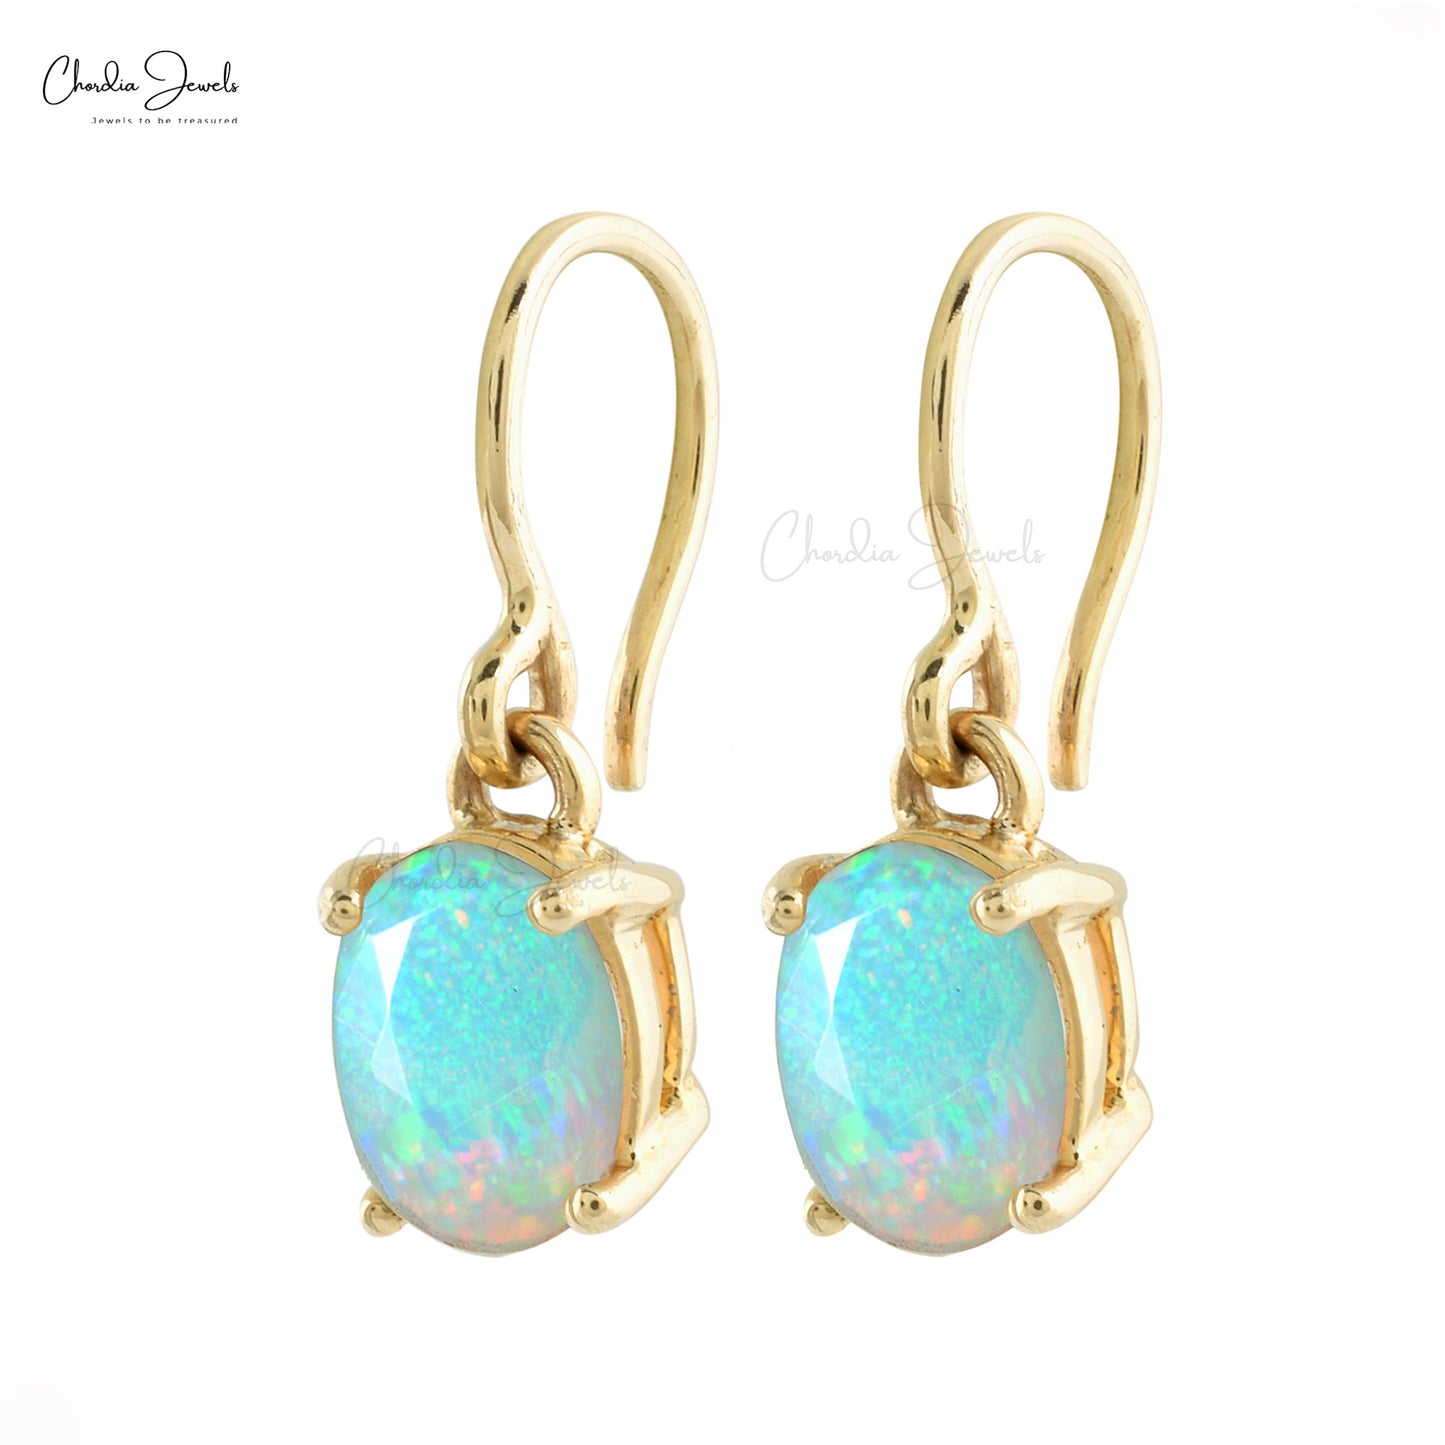 Genuine Ethiopian Opal Earrings 7x5mm Oval Cut Gemstone Earrings 14k Solid Yellow Gold Dangling Earrings For Women's